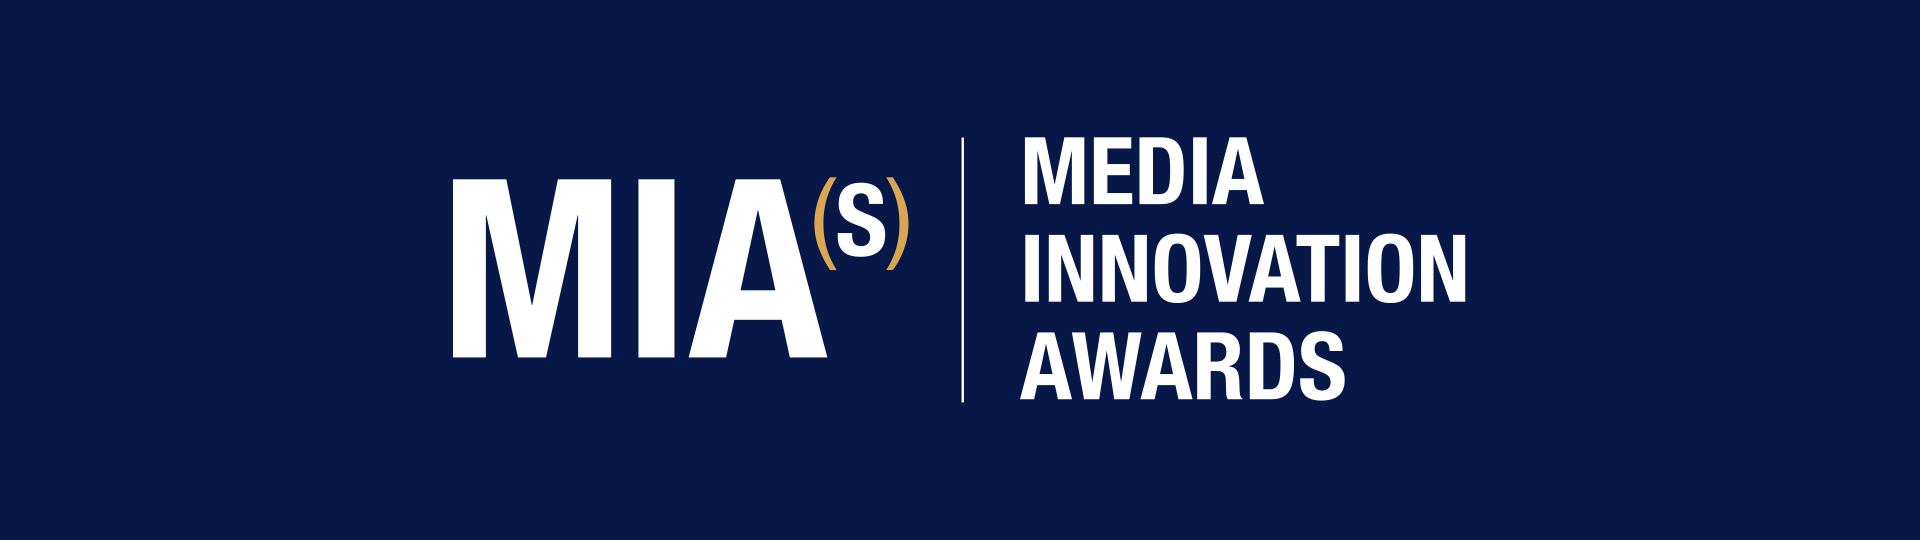 Media Innovation Awards logo